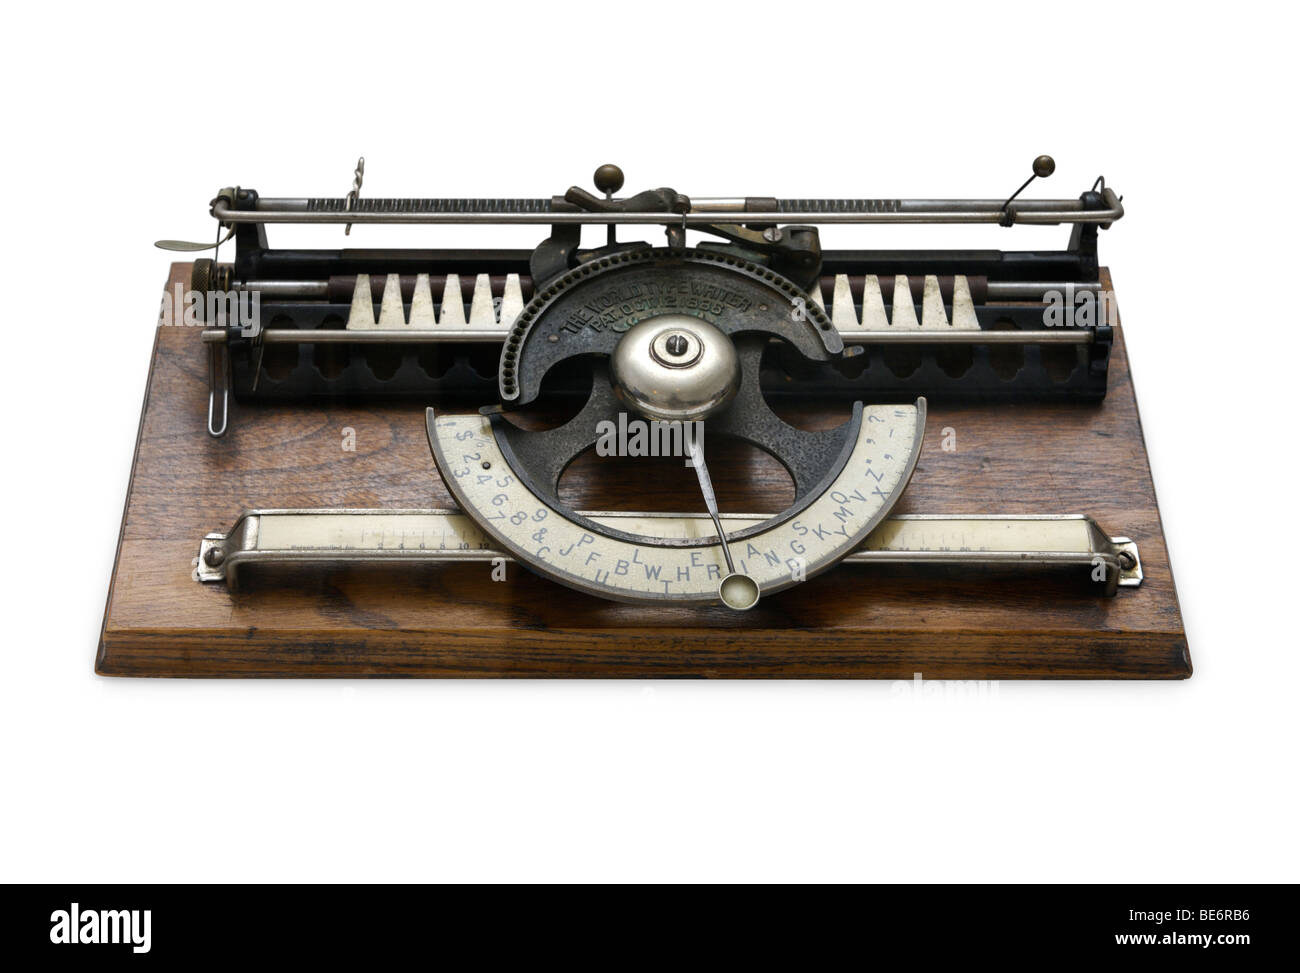 1886 index früh Schreibmaschine Welt 1 von Welt Typewriter Co., USA hergestellt Stockfoto